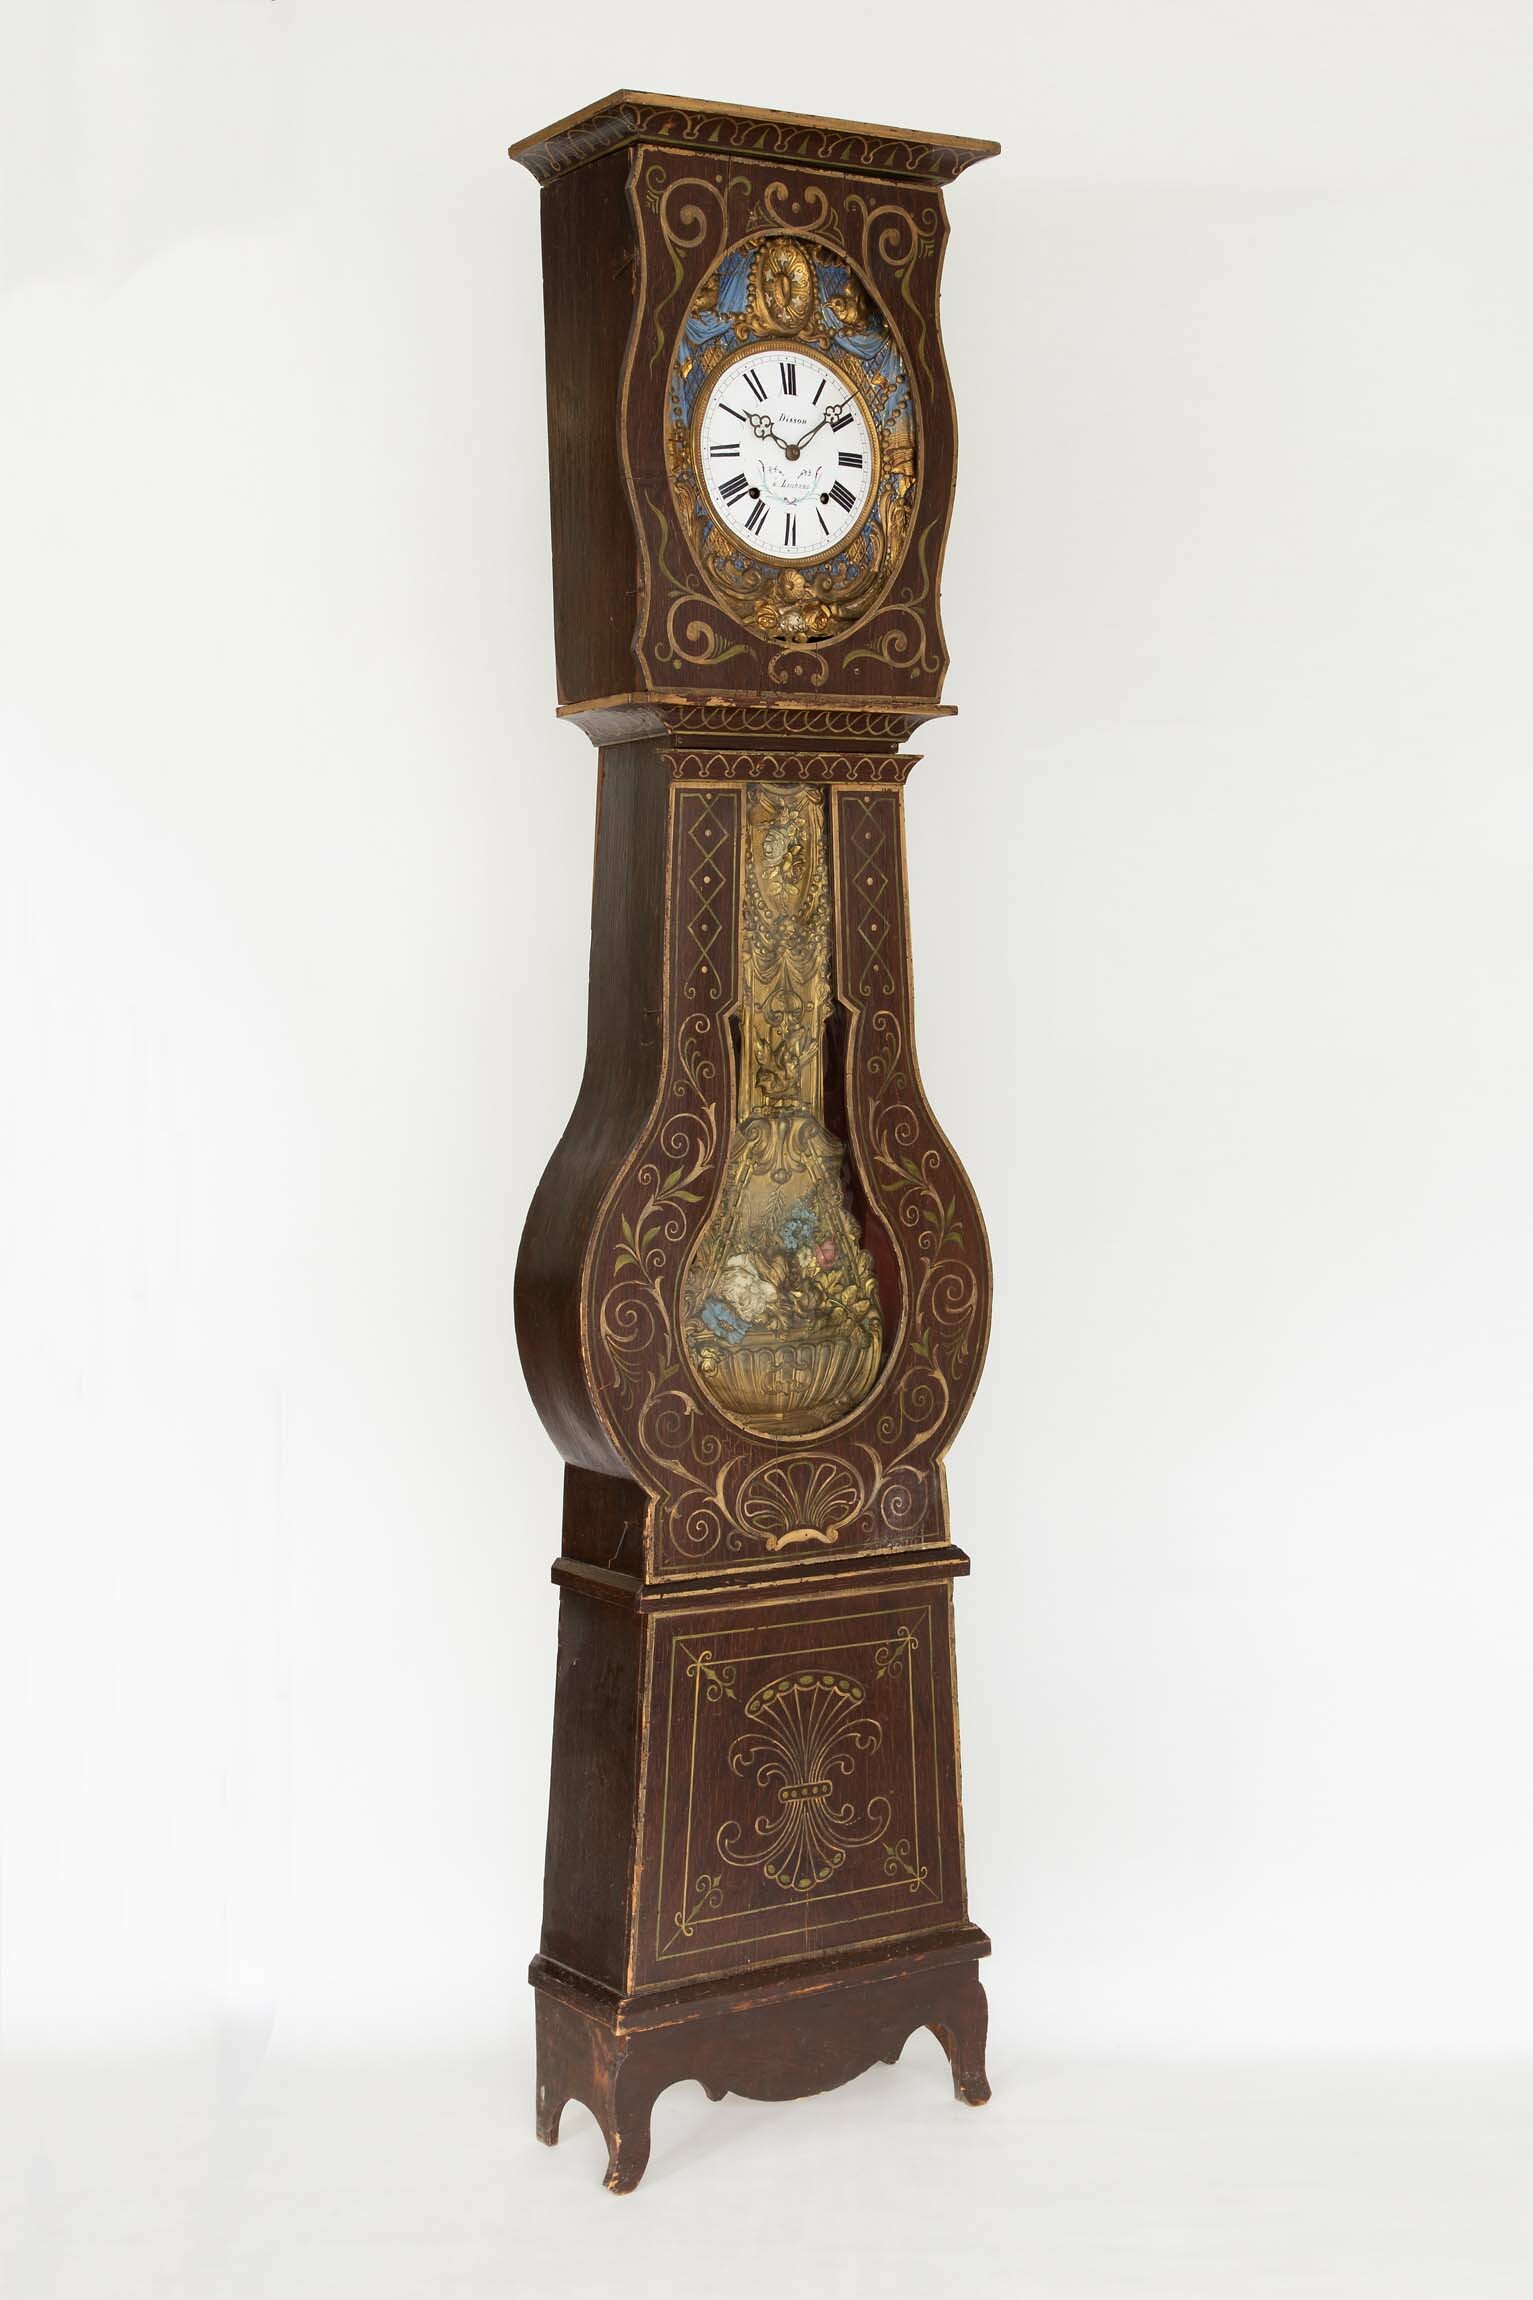 Standuhr, Disson, Louhans (Verkäufer), um 1850 (Deutsches Uhrenmuseum CC BY-SA)